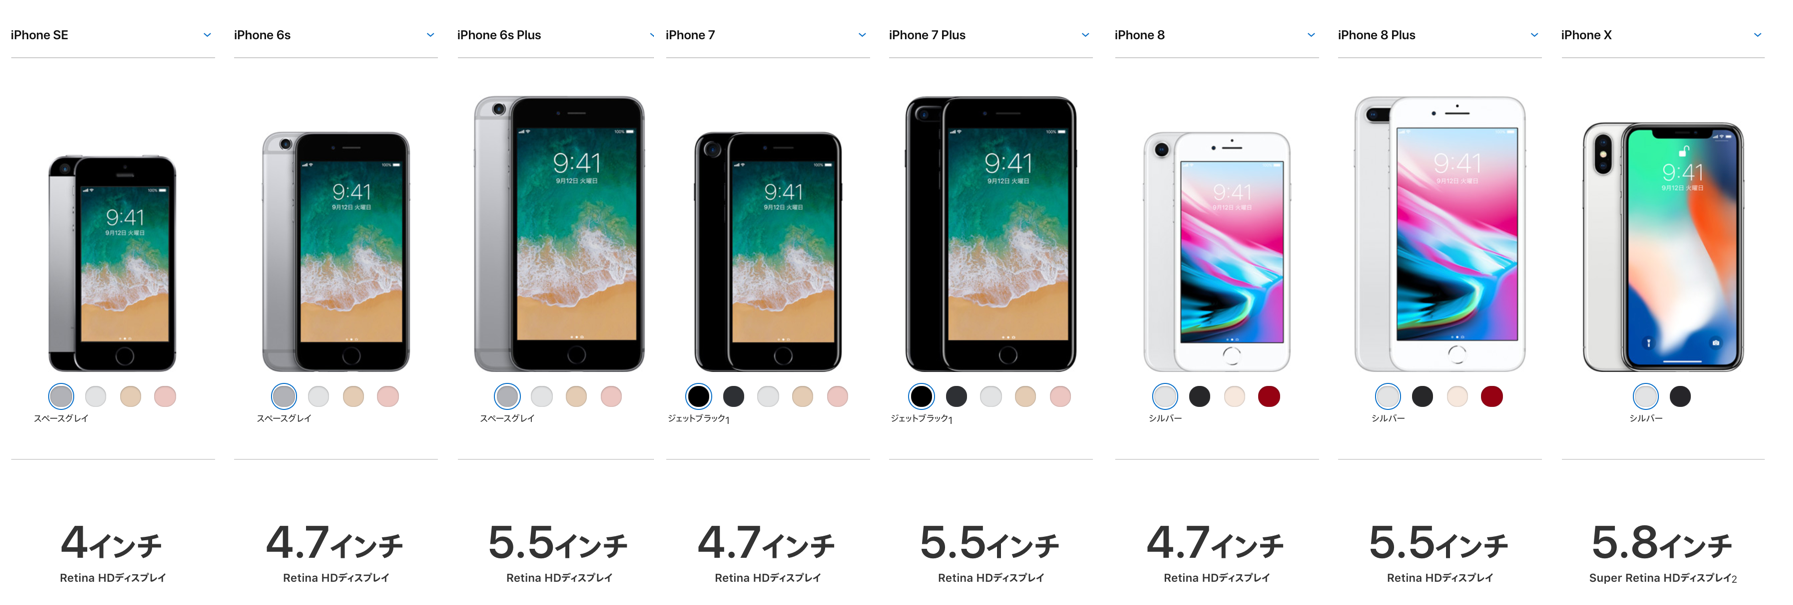 iPhone画面サイズ早見表（図付き）| TD3P - Qiita